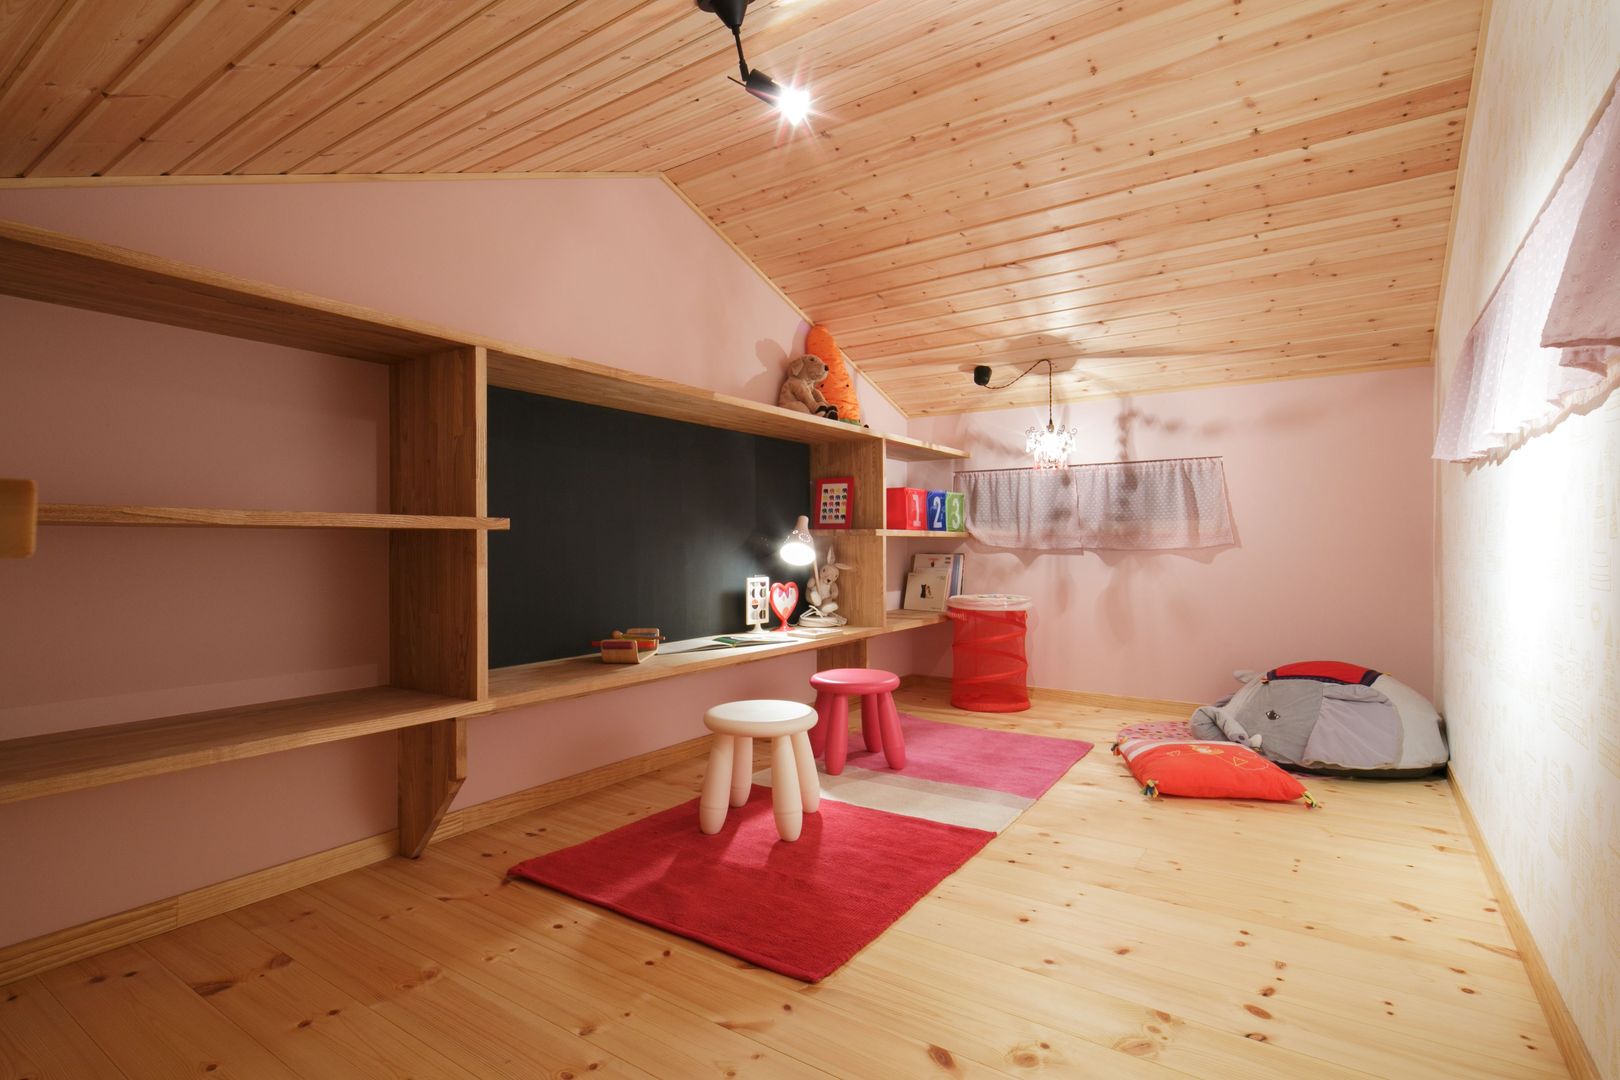 H's HOUSE, dwarf dwarf Scandinavian style nursery/kids room